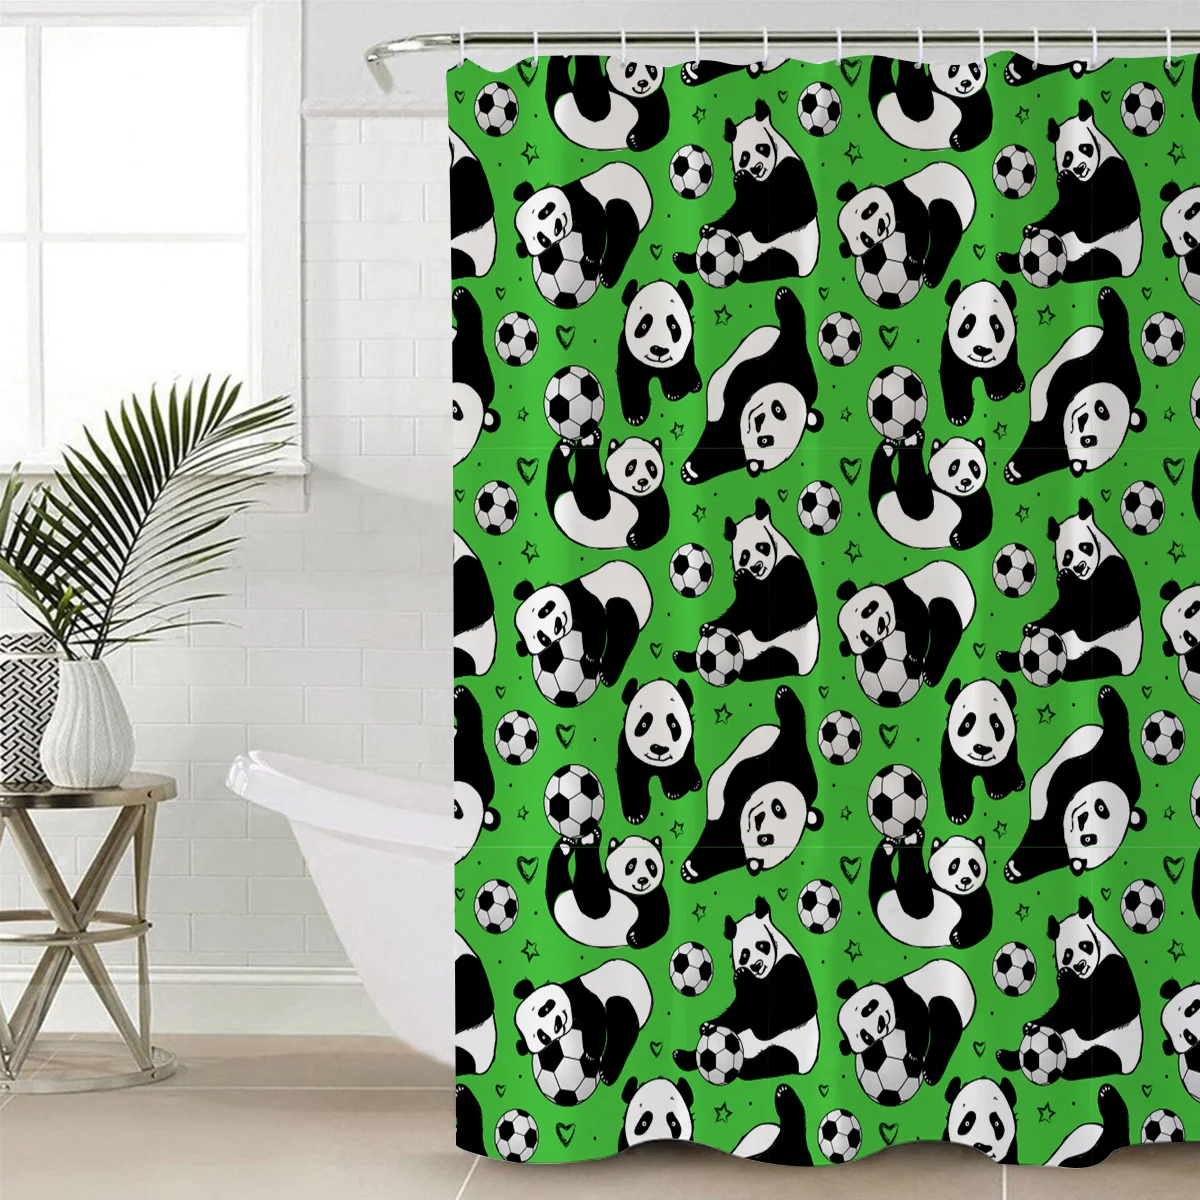 Qualibuy дом магазин панда фон зеленый Азиатский футбол игра Ванная Комната Занавески для душа ткань занавески для ванной комнаты